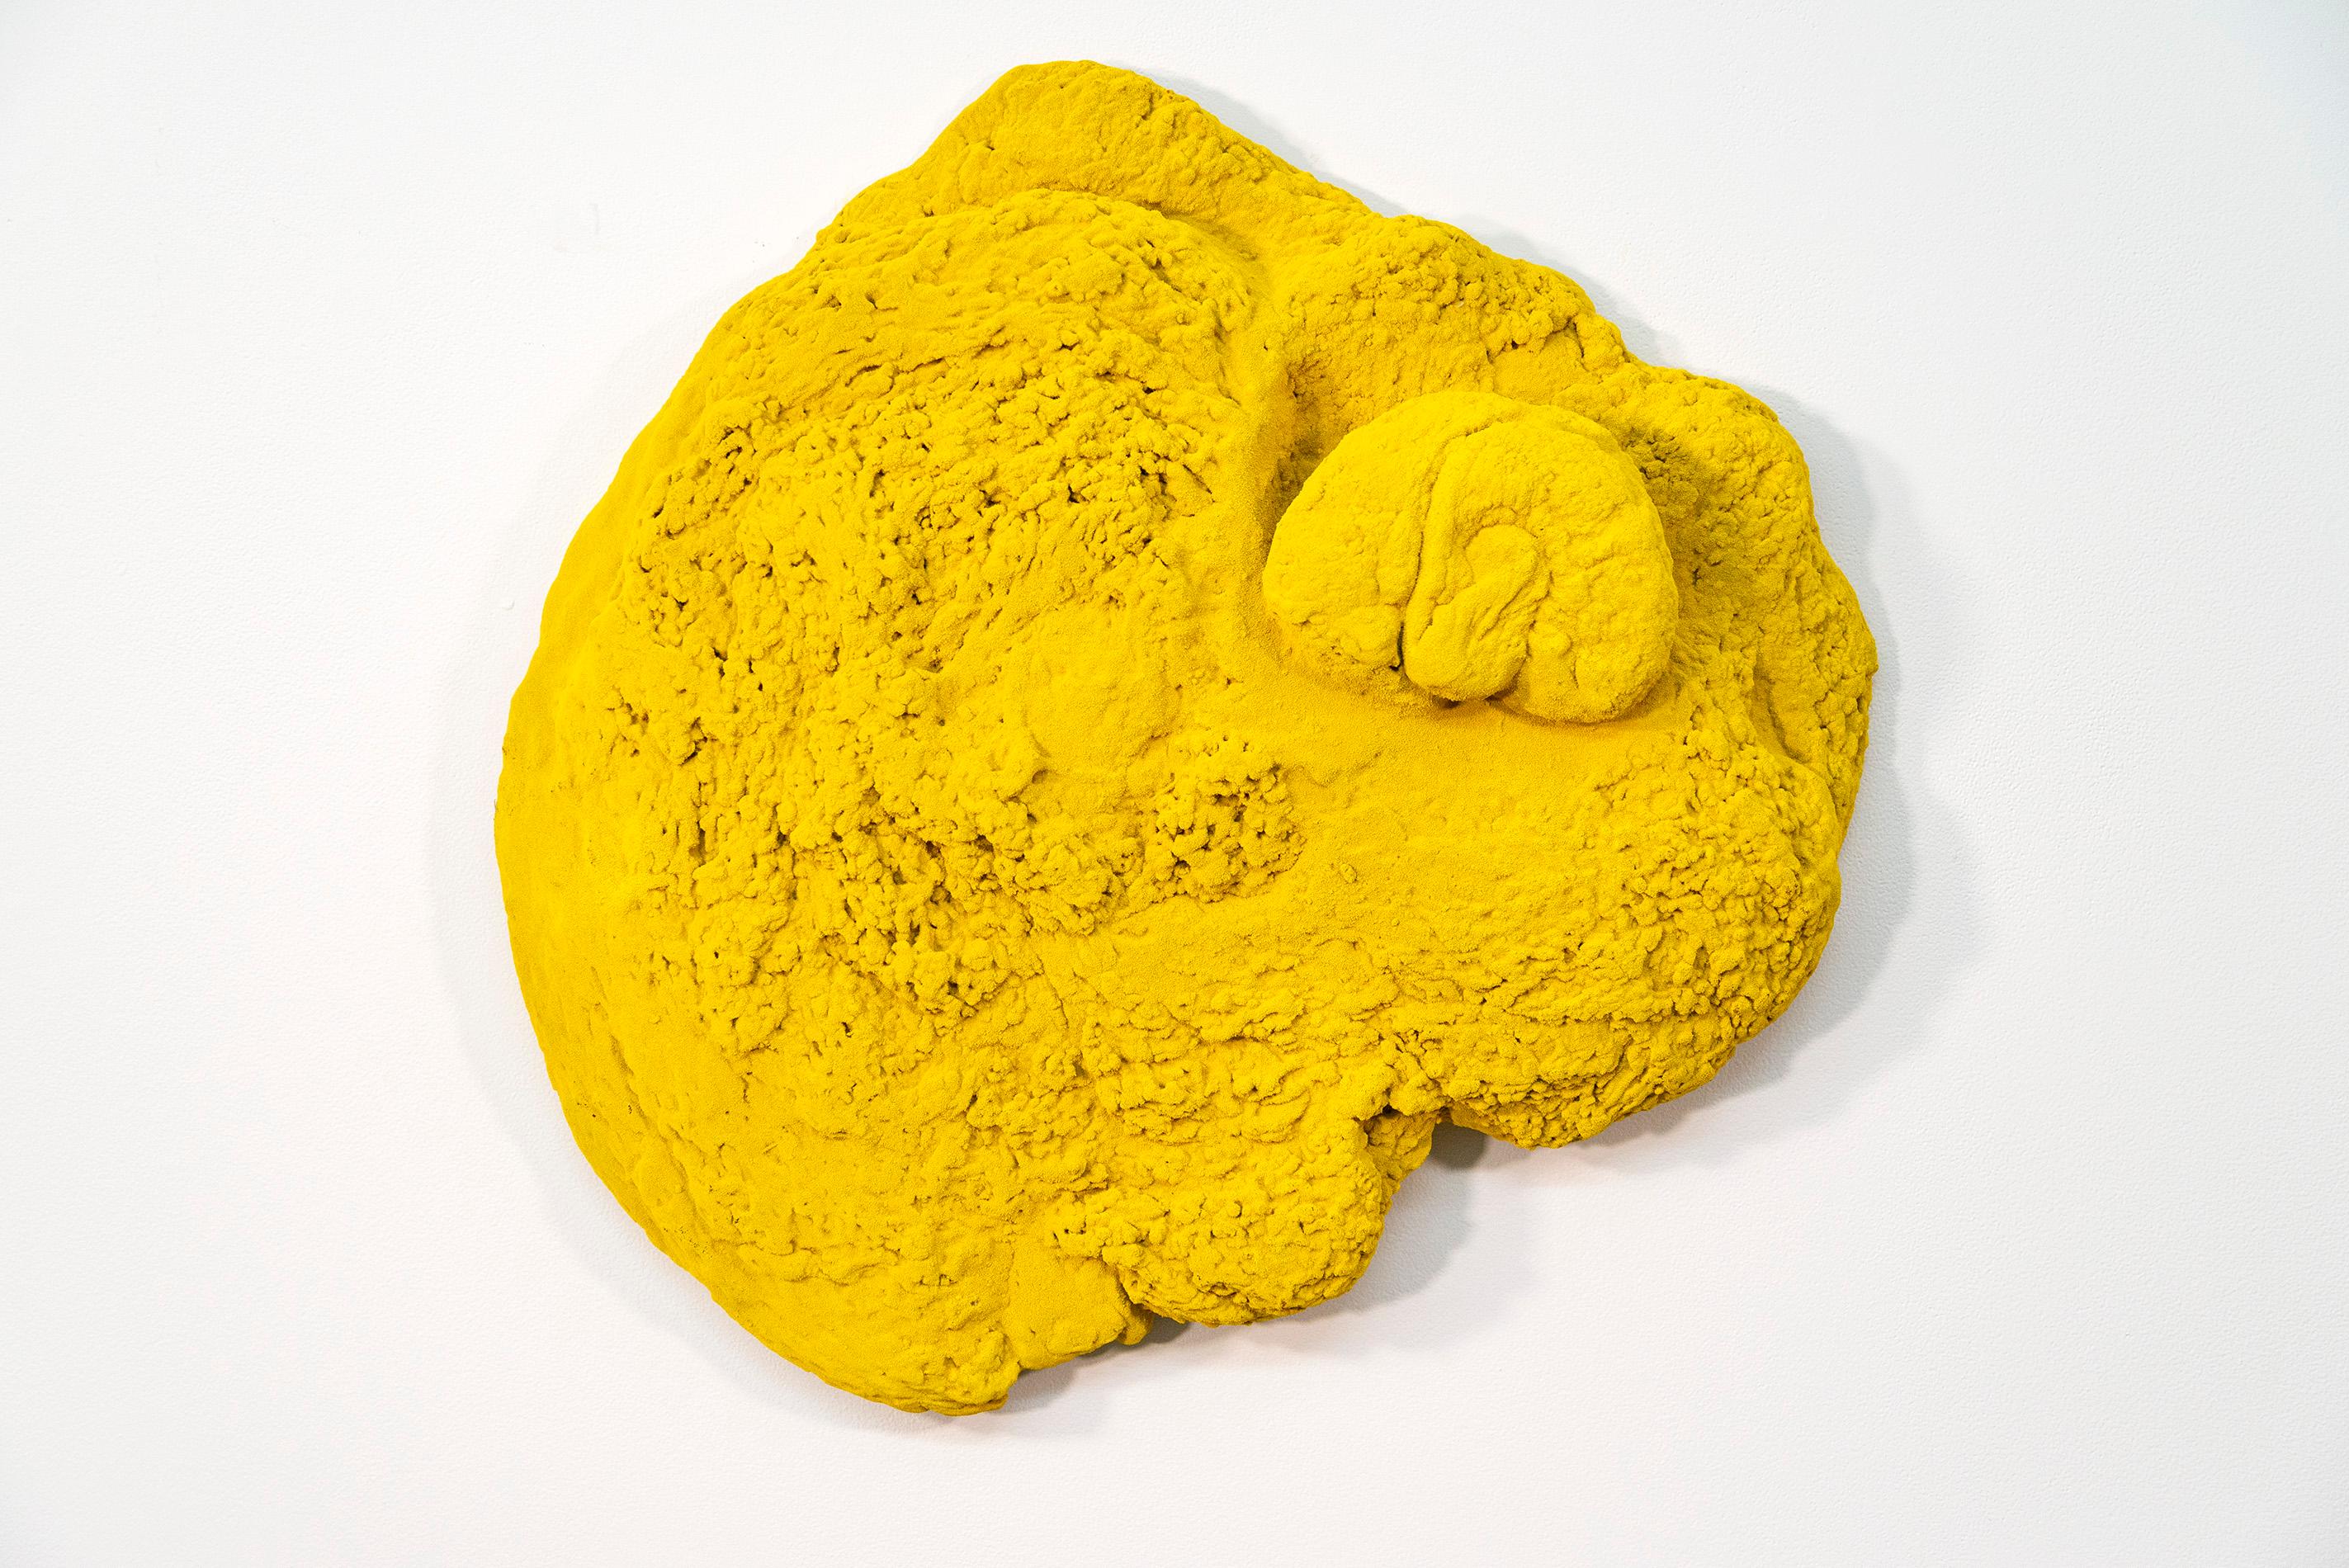 Shayne Dark Abstract Sculpture - Yellow Matter - bright, matte, textured, abstract, mixed media wall sculpture